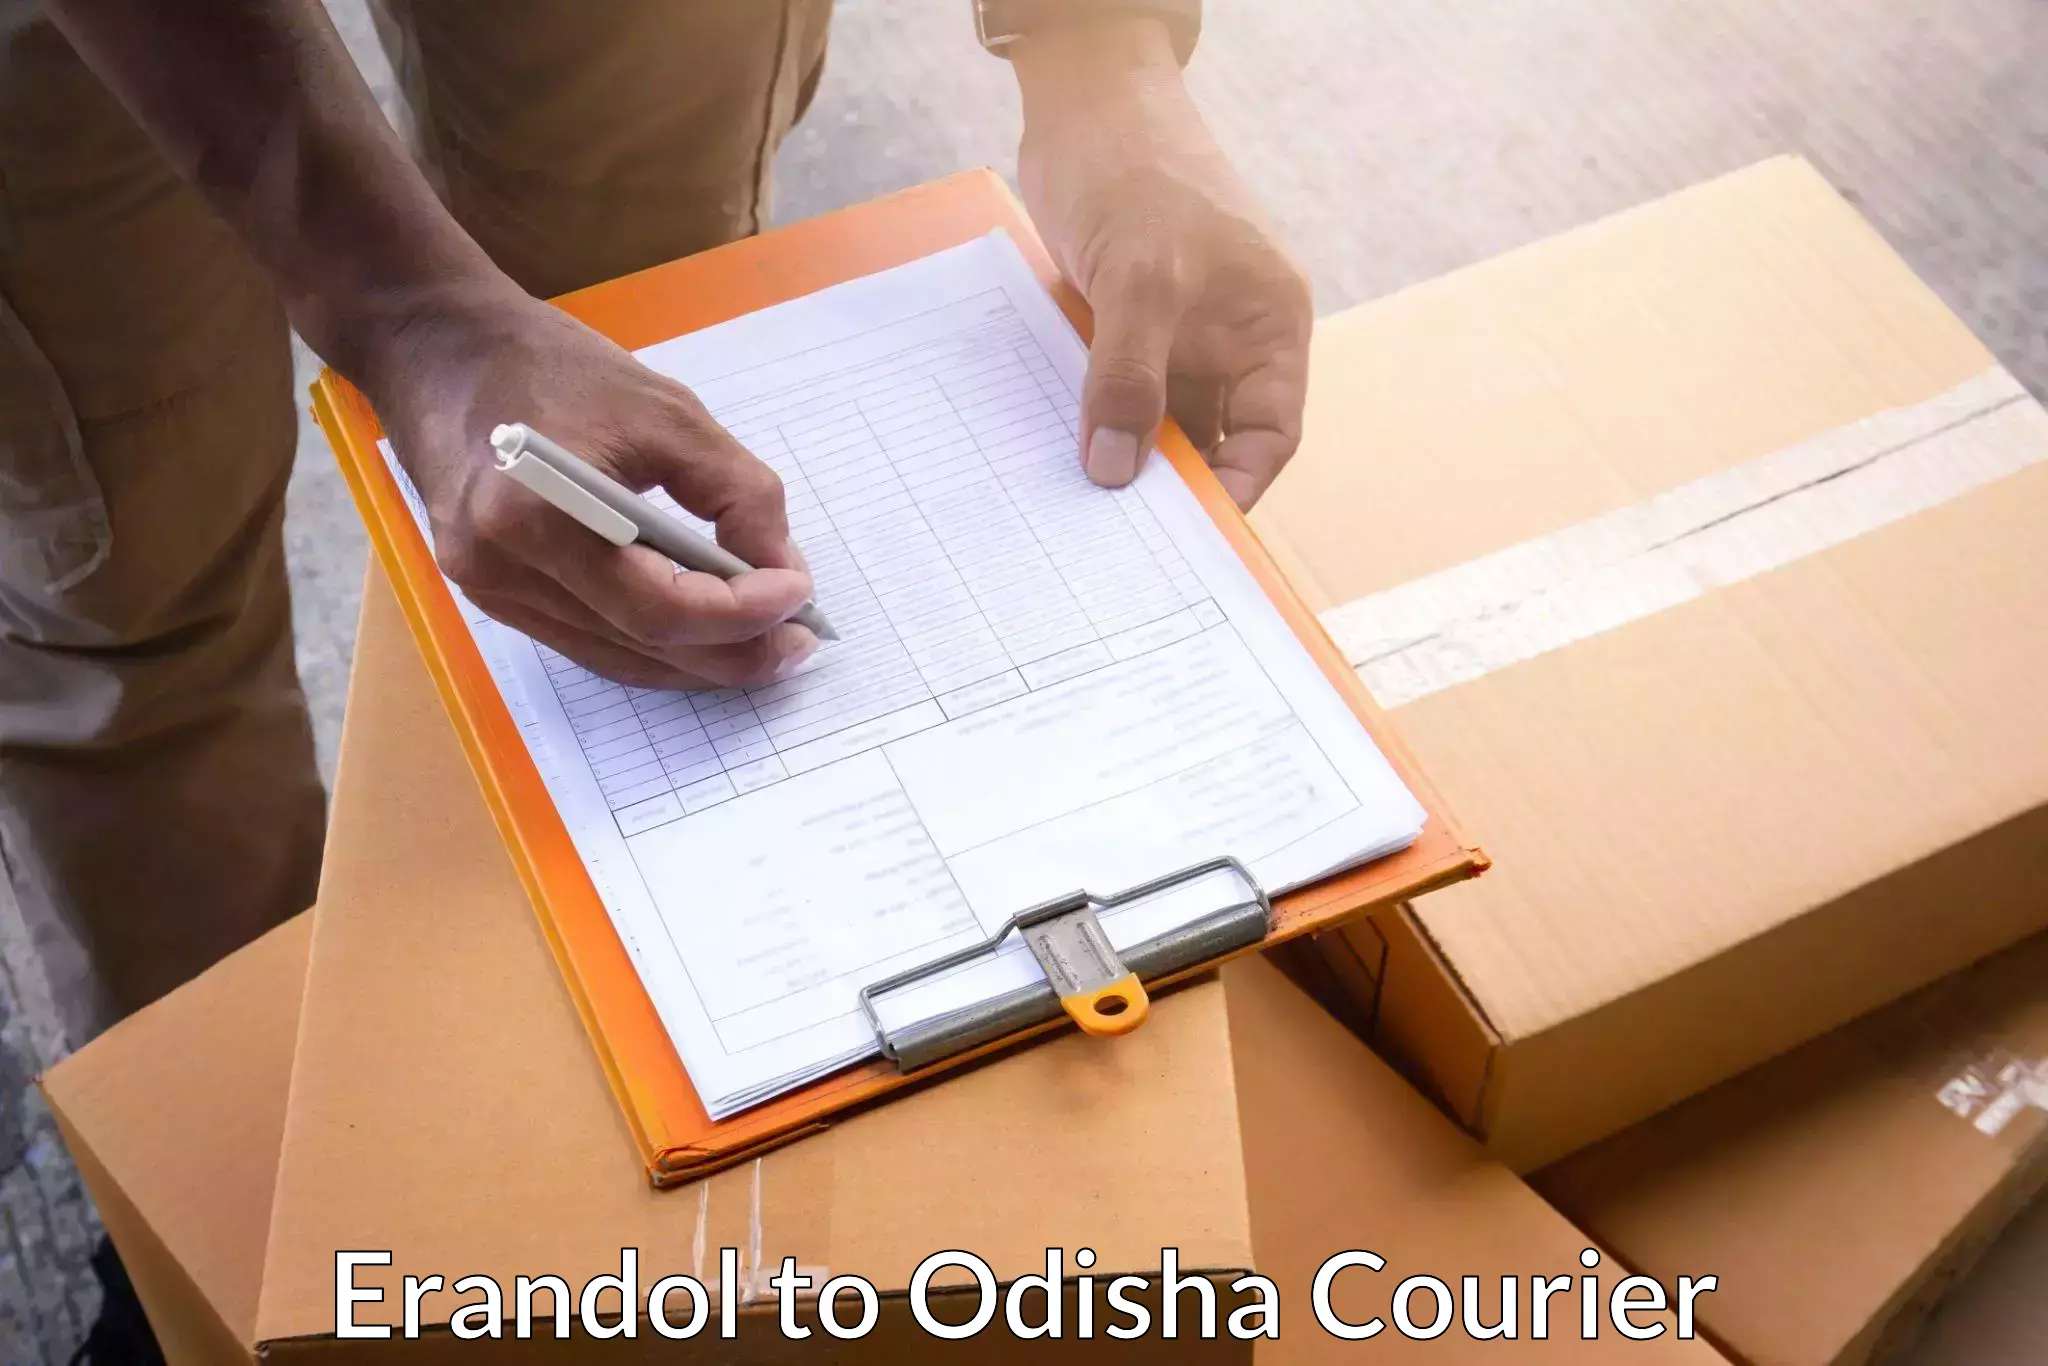 Digital courier platforms Erandol to Odisha